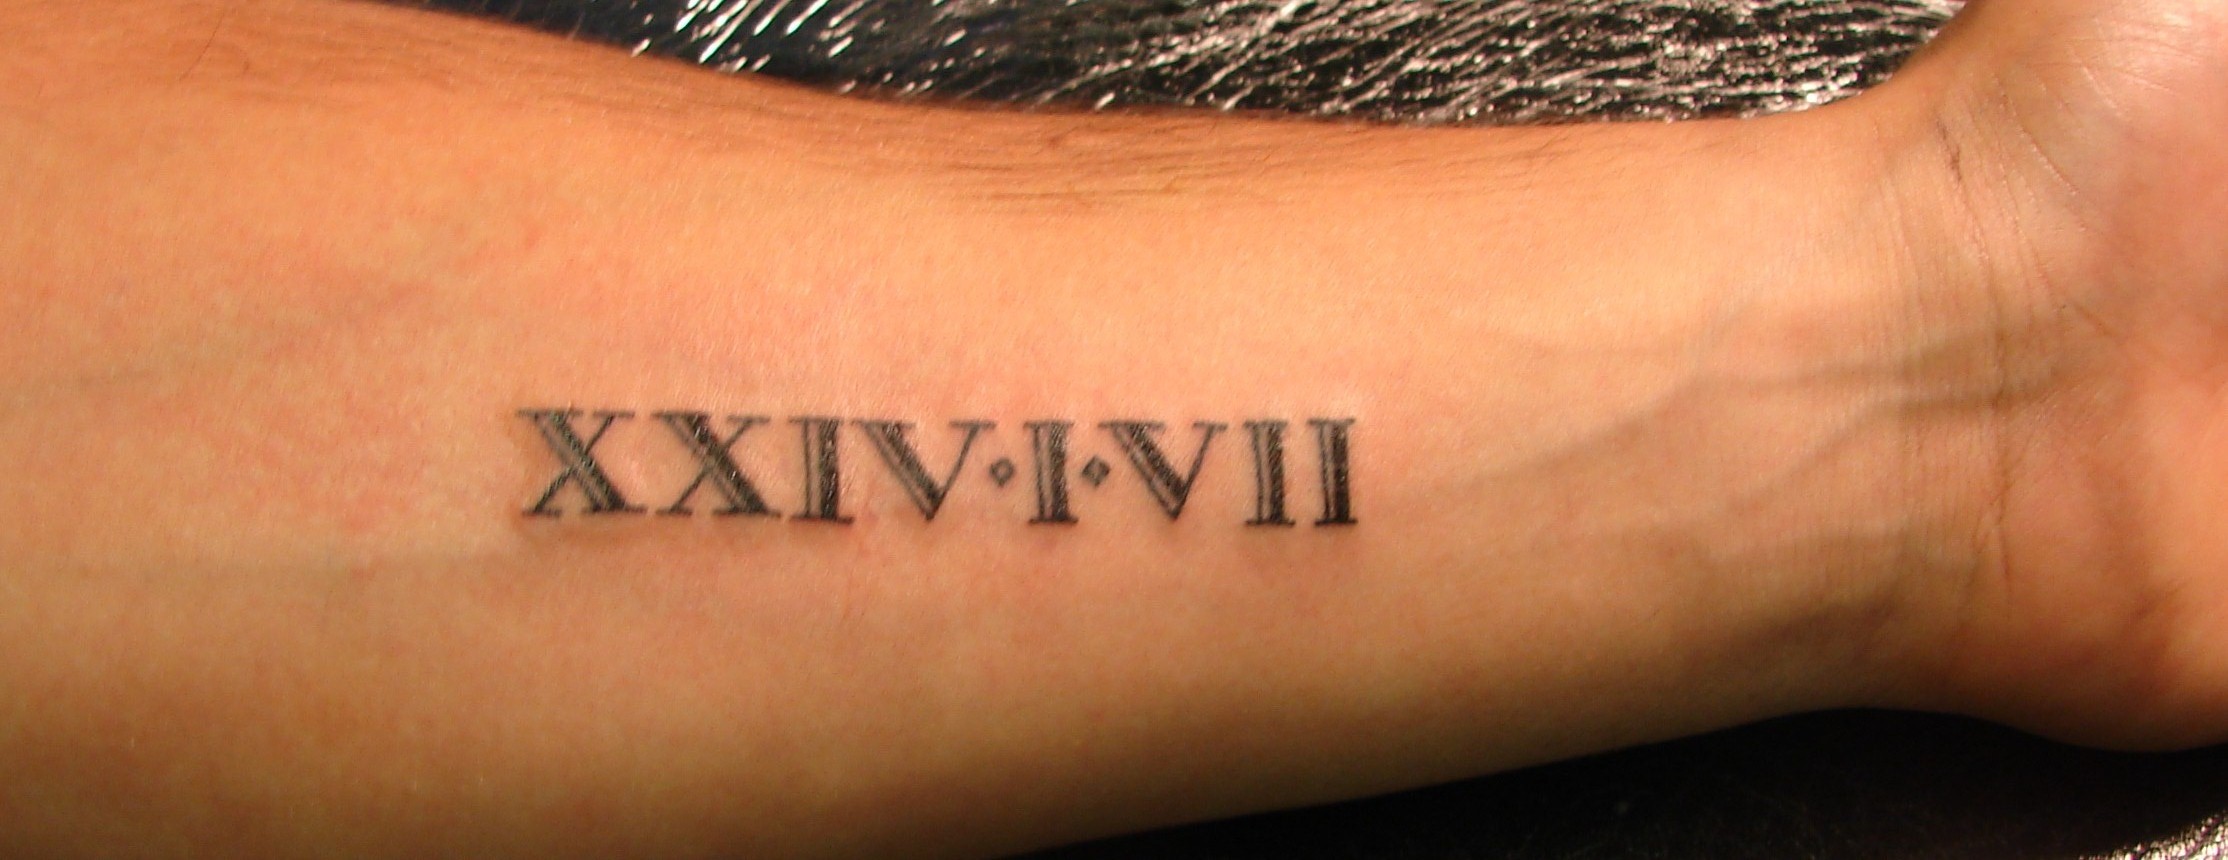 2. Custom Roman Numeral Tattoo Maker - wide 7